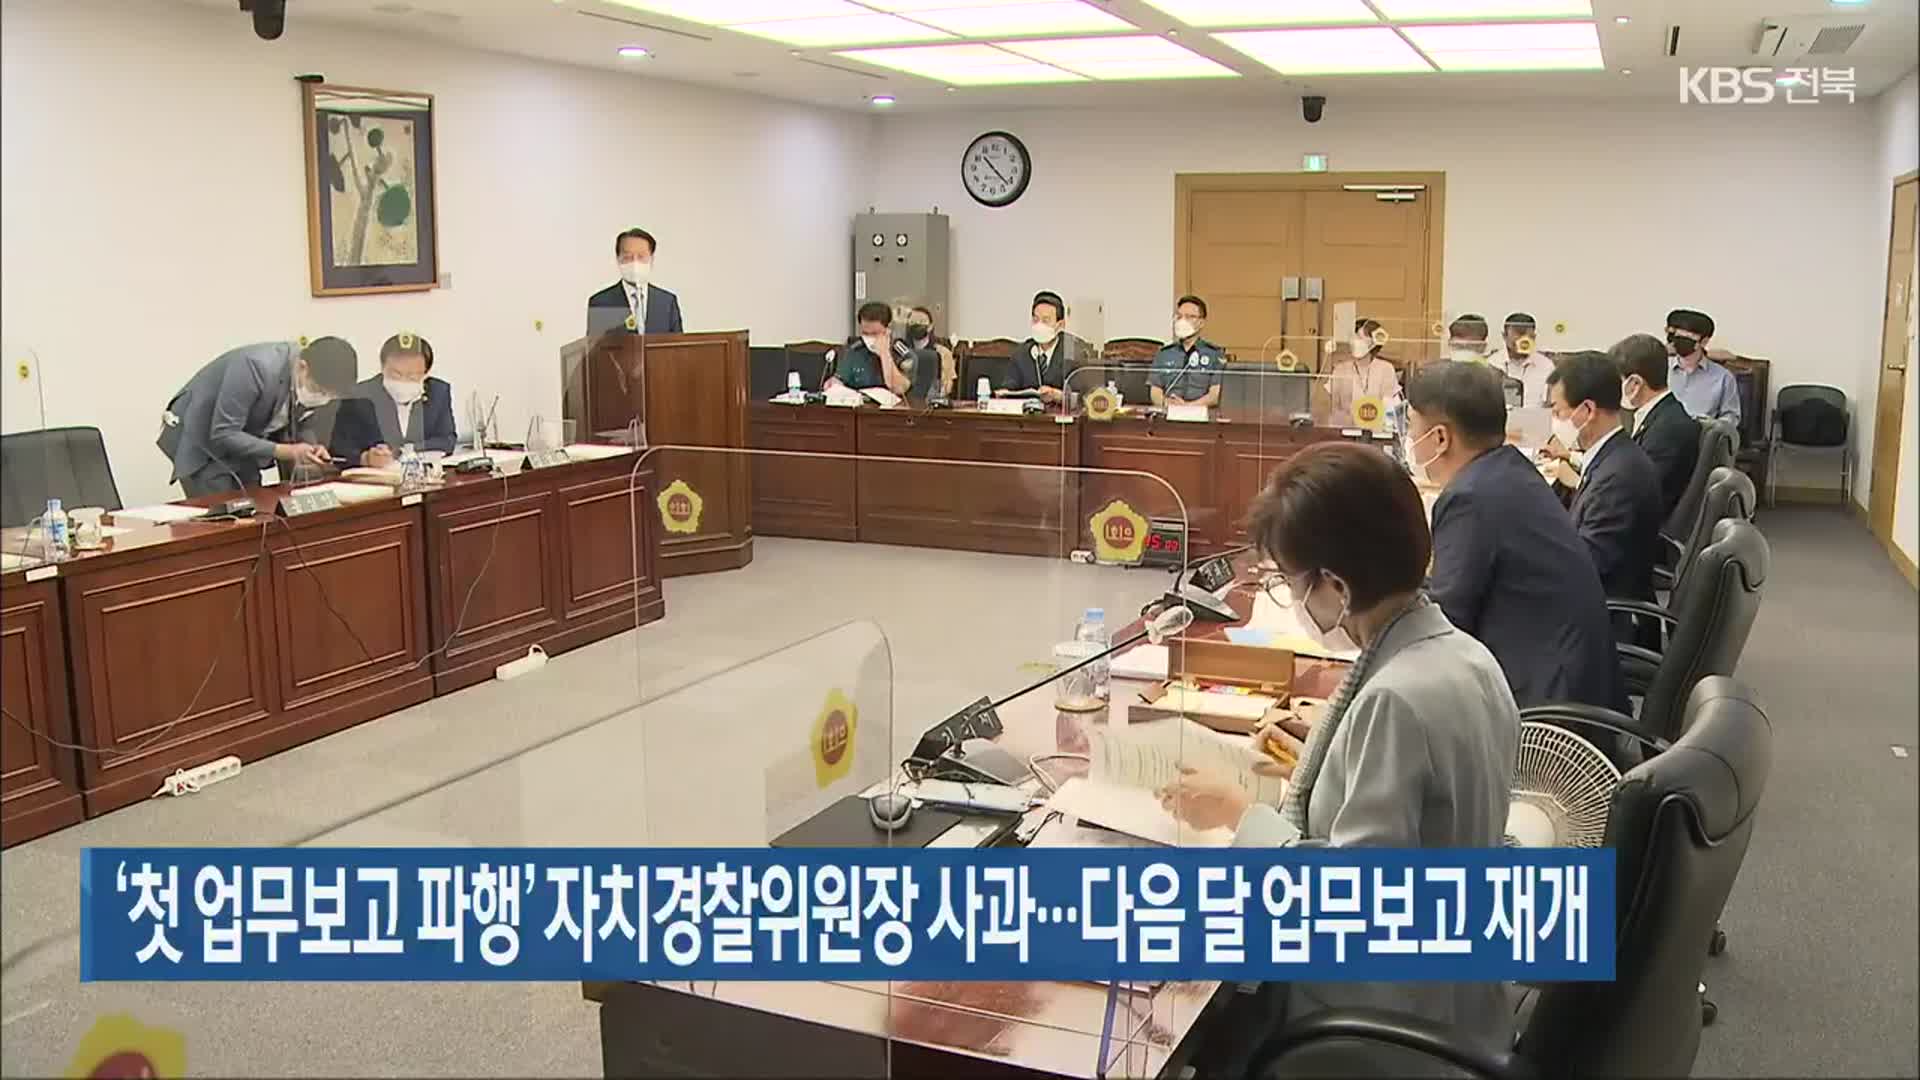 ‘첫 업무보고 파행’ 자치경찰위원장 사과…다음 달 업무보고 재개